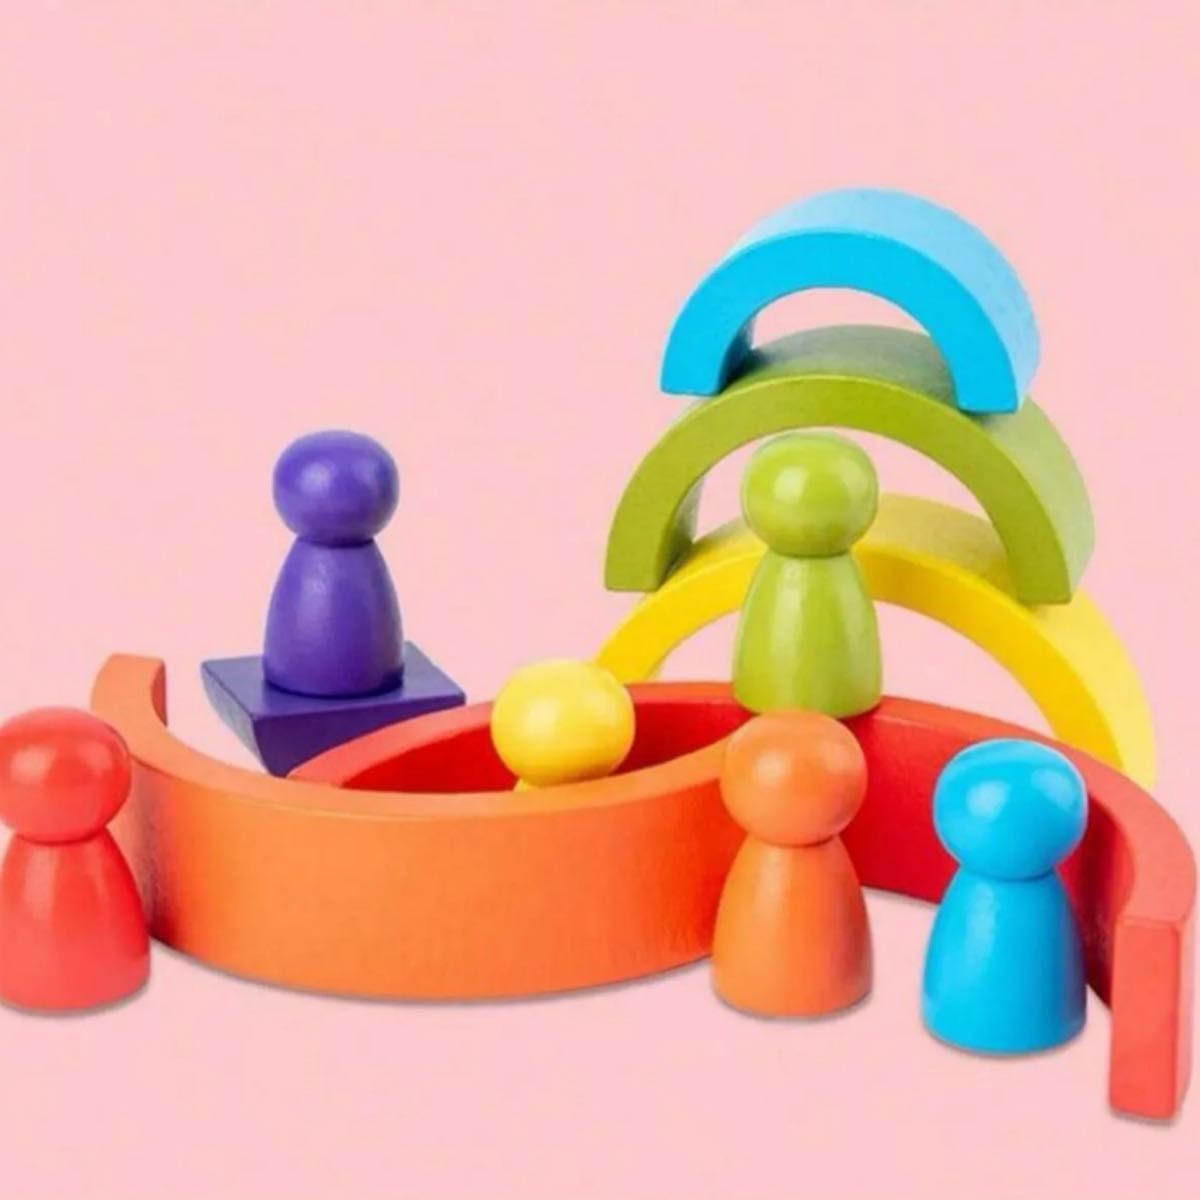 【新品未使用】知育玩具 アーチレインボー 人形 小人 積み木 ブロック モンテッソーリ  木製 赤ちゃん おもちゃ 木のおもちゃ